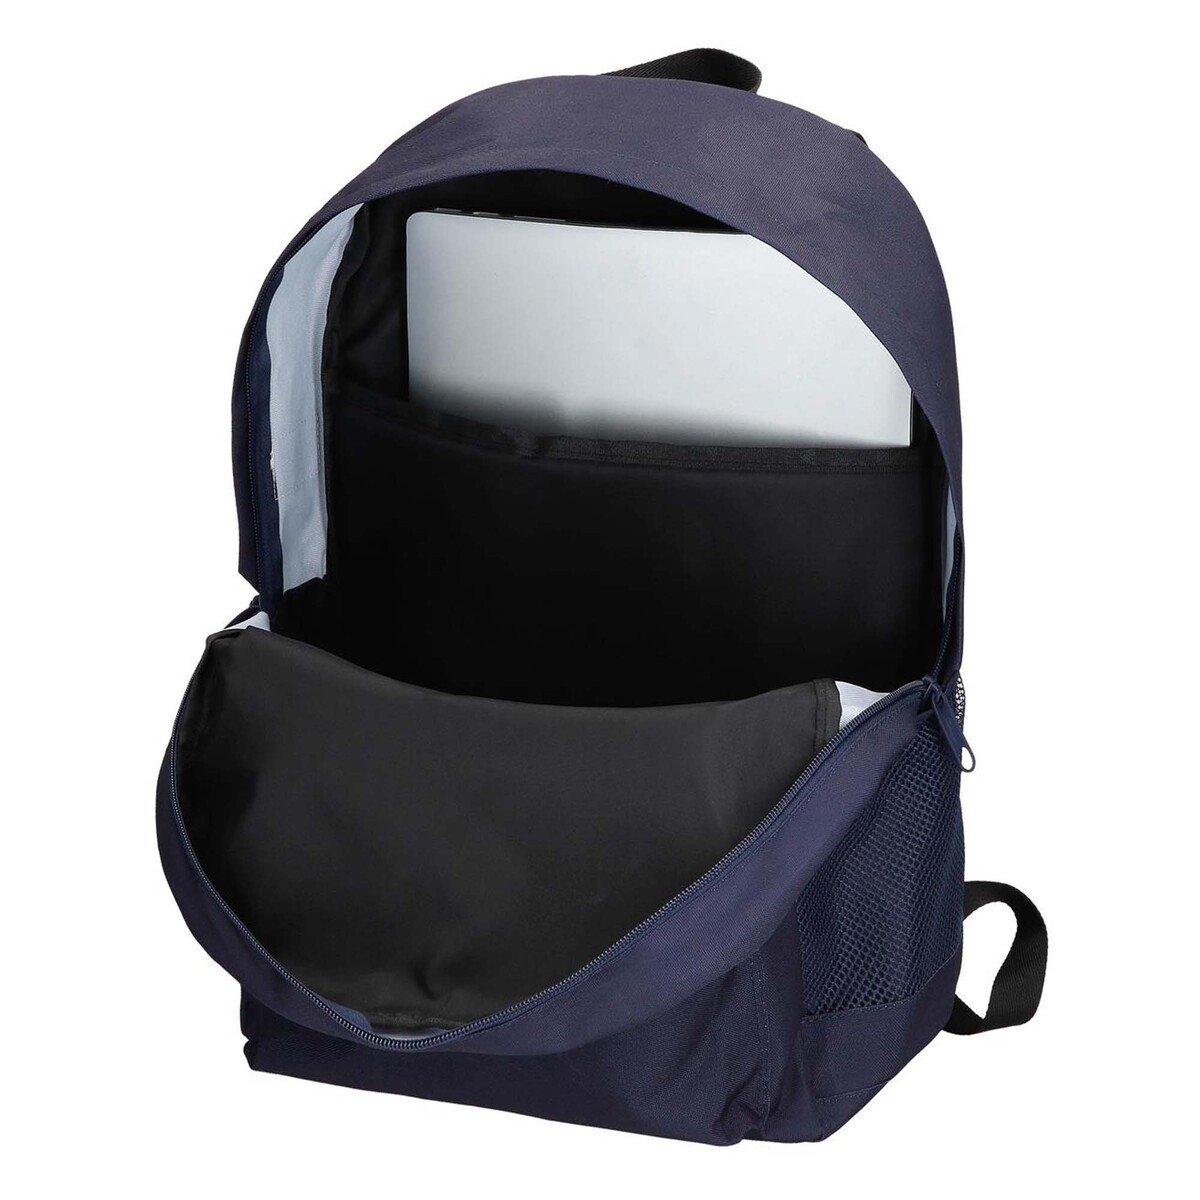 Reebok Backpack 45cm 8872322 Navy